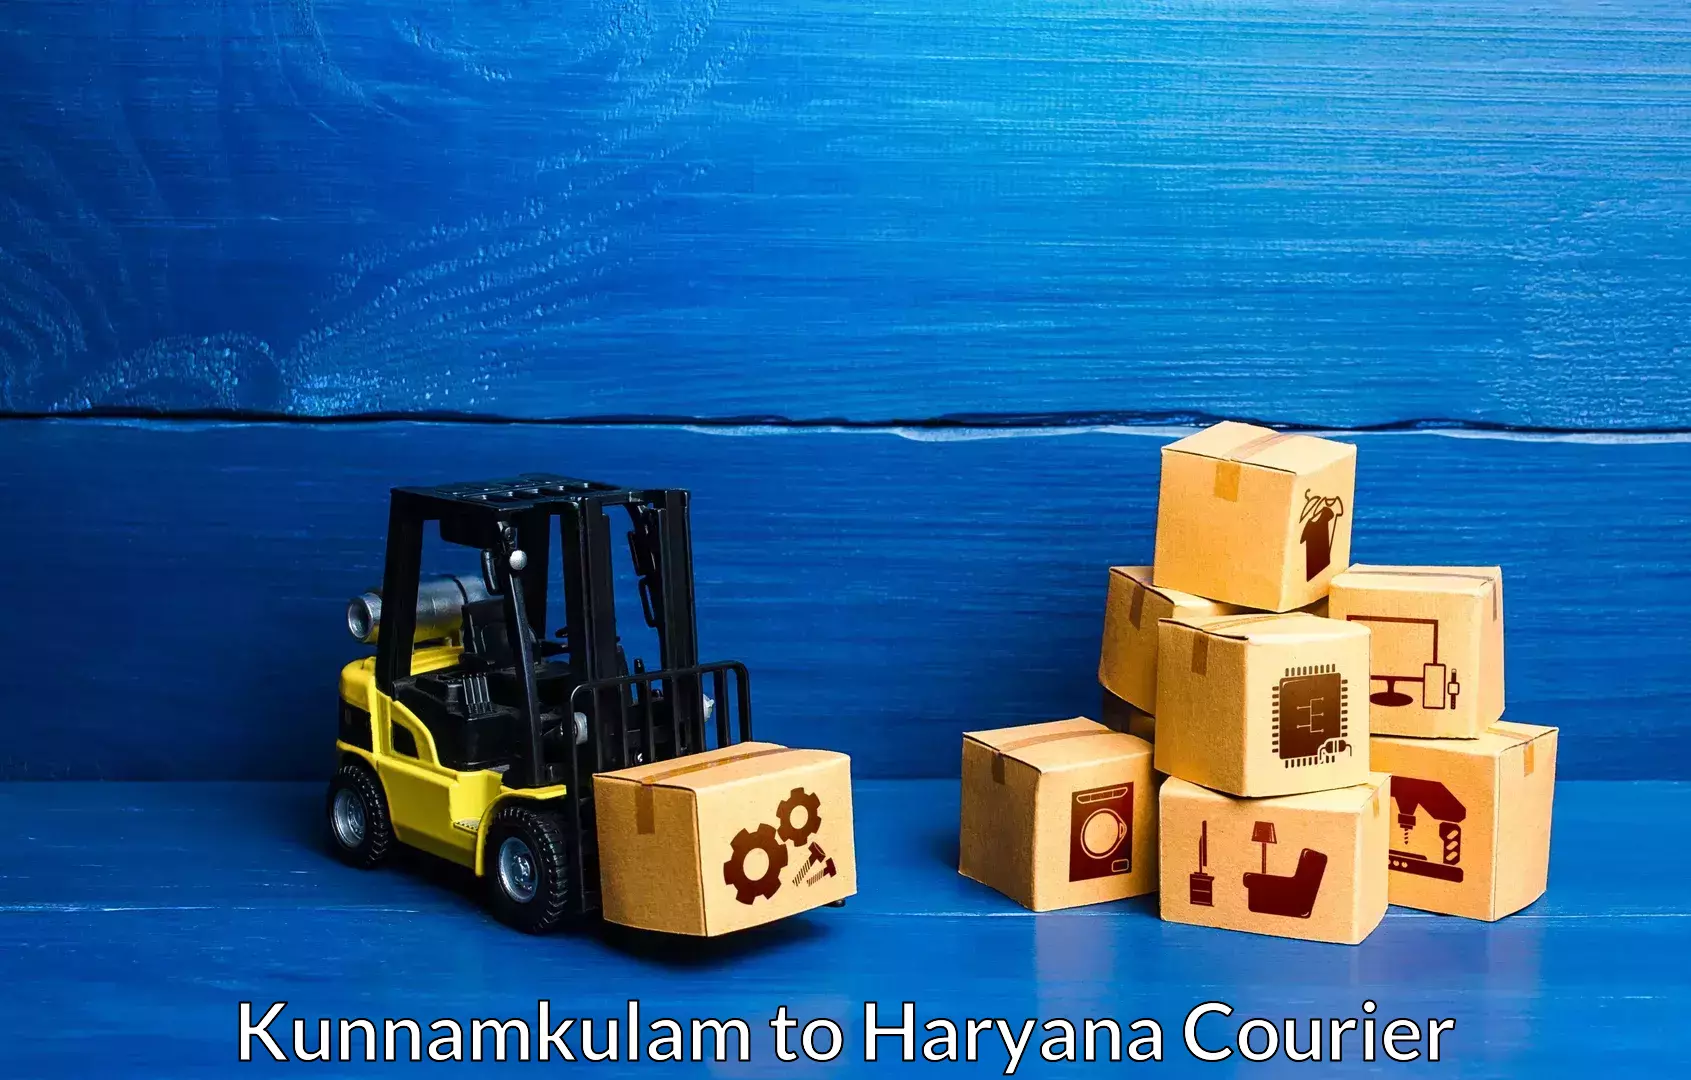 Furniture shipping services Kunnamkulam to Chaudhary Charan Singh Haryana Agricultural University Hisar